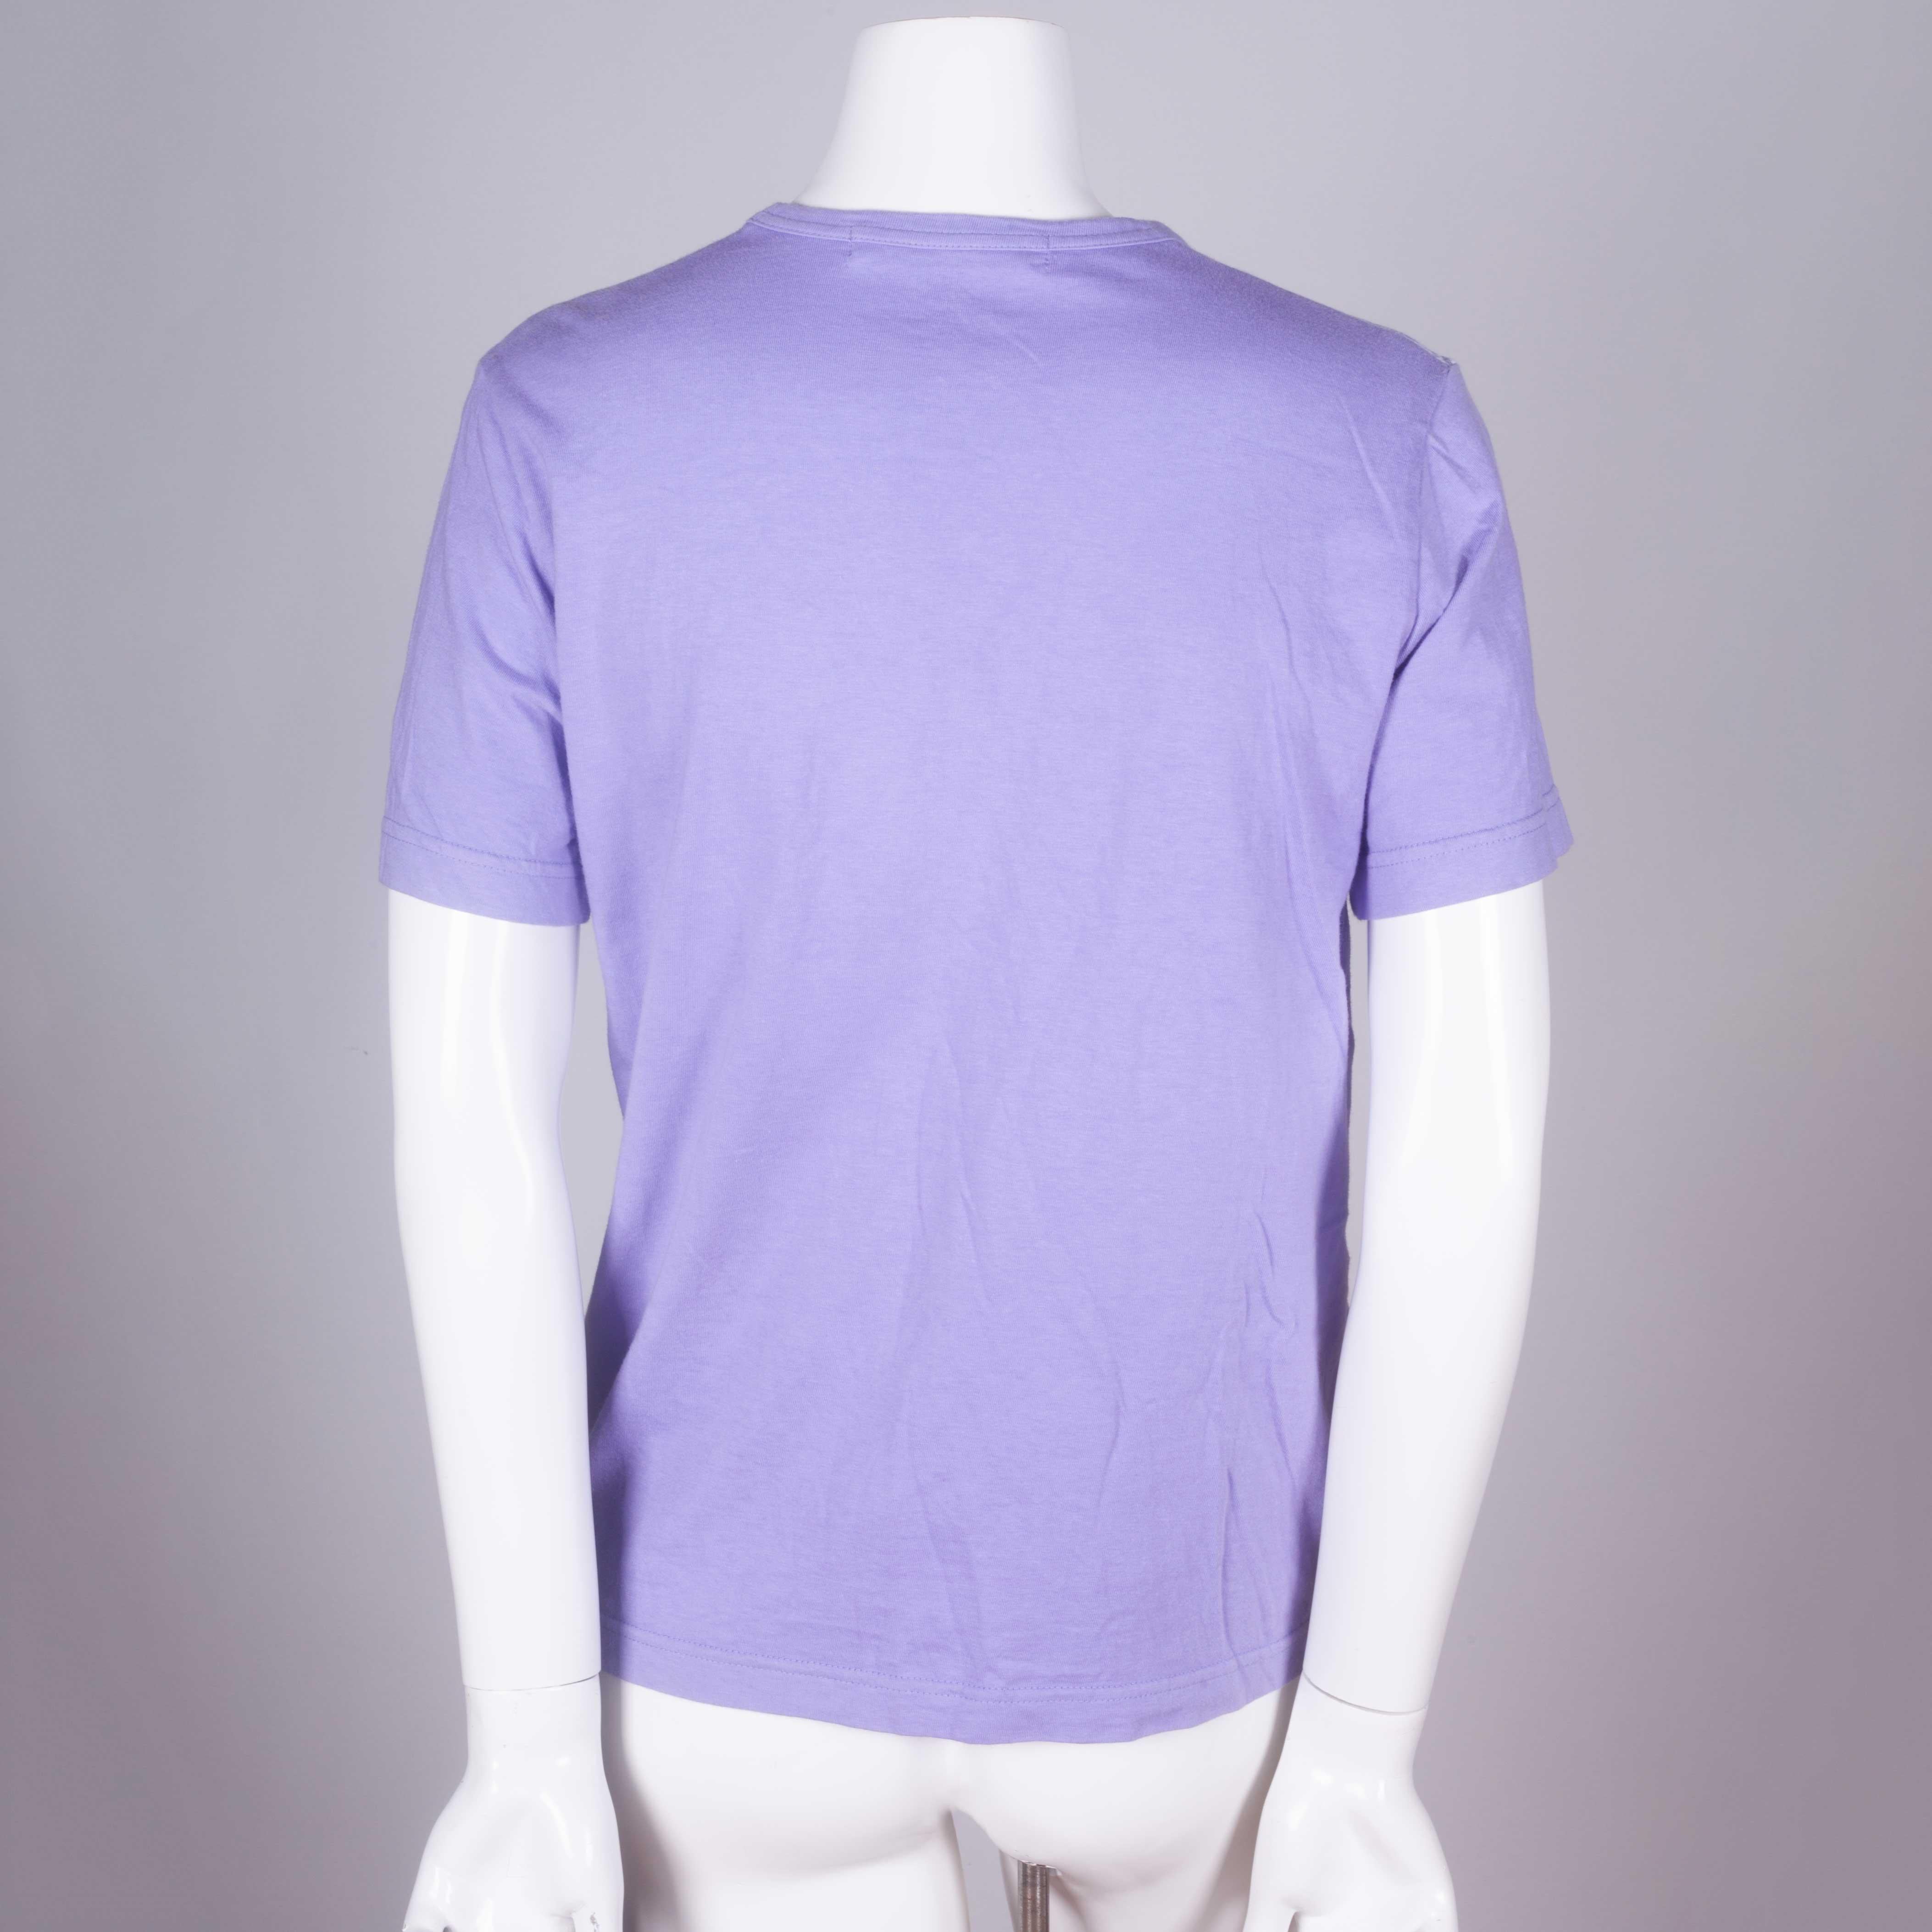 Women's or Men's Comme des Garçons Purple T-shirt with Lace Motif, 2006